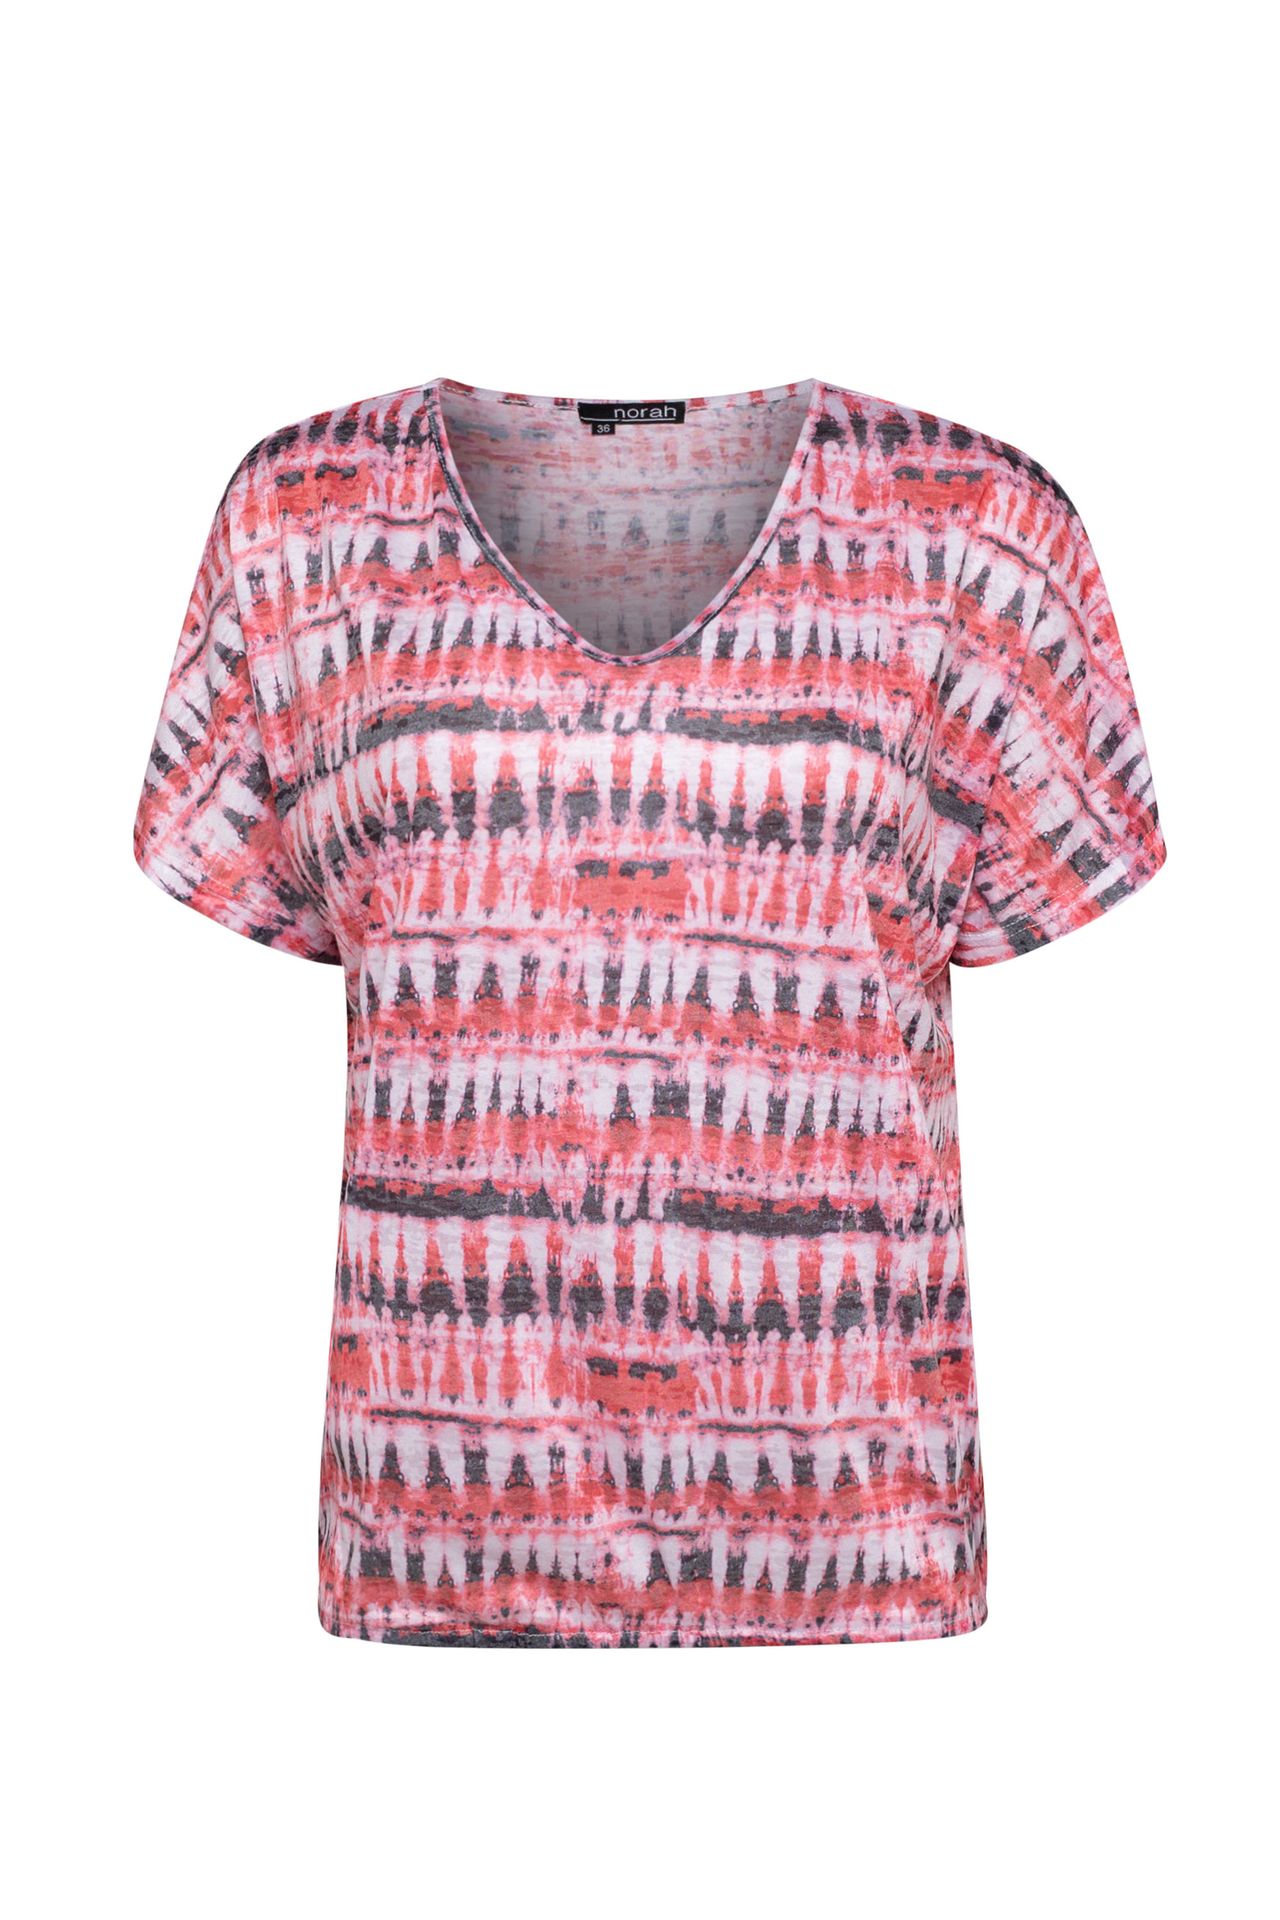 Norah Shirt roze multi azalea multicolor 212664-955